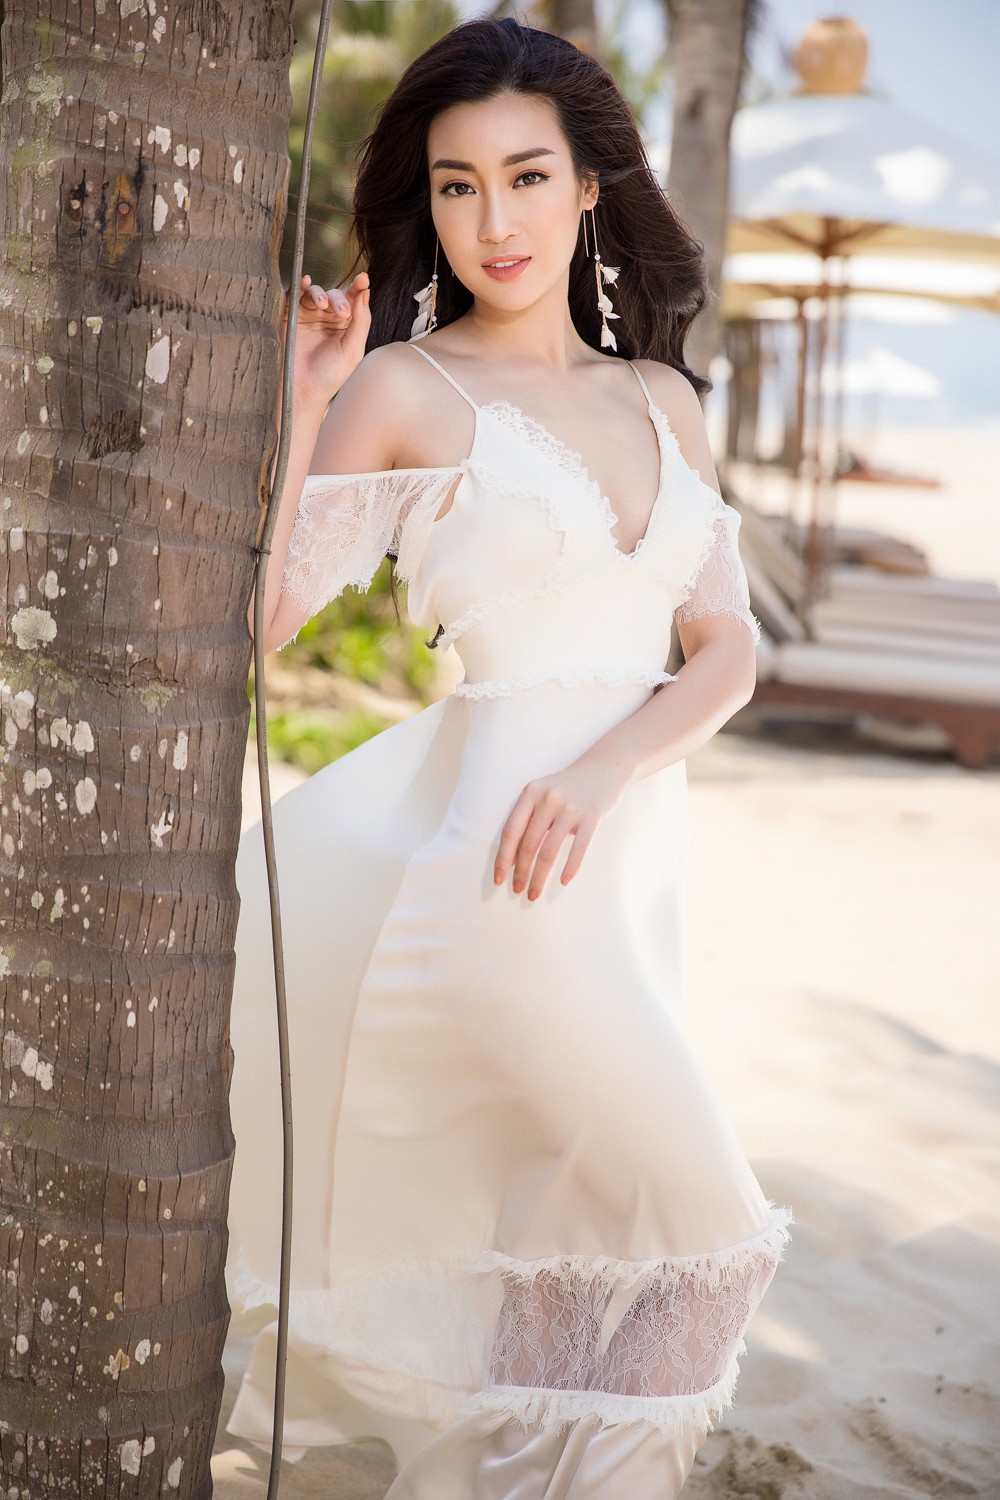 Ghen tỵ với bộ ảnh đẹp lung linh của Hội bạn thân Hoa hậu Mỹ Linh - Thùy Dung - Thanh Tú - Ảnh 13.